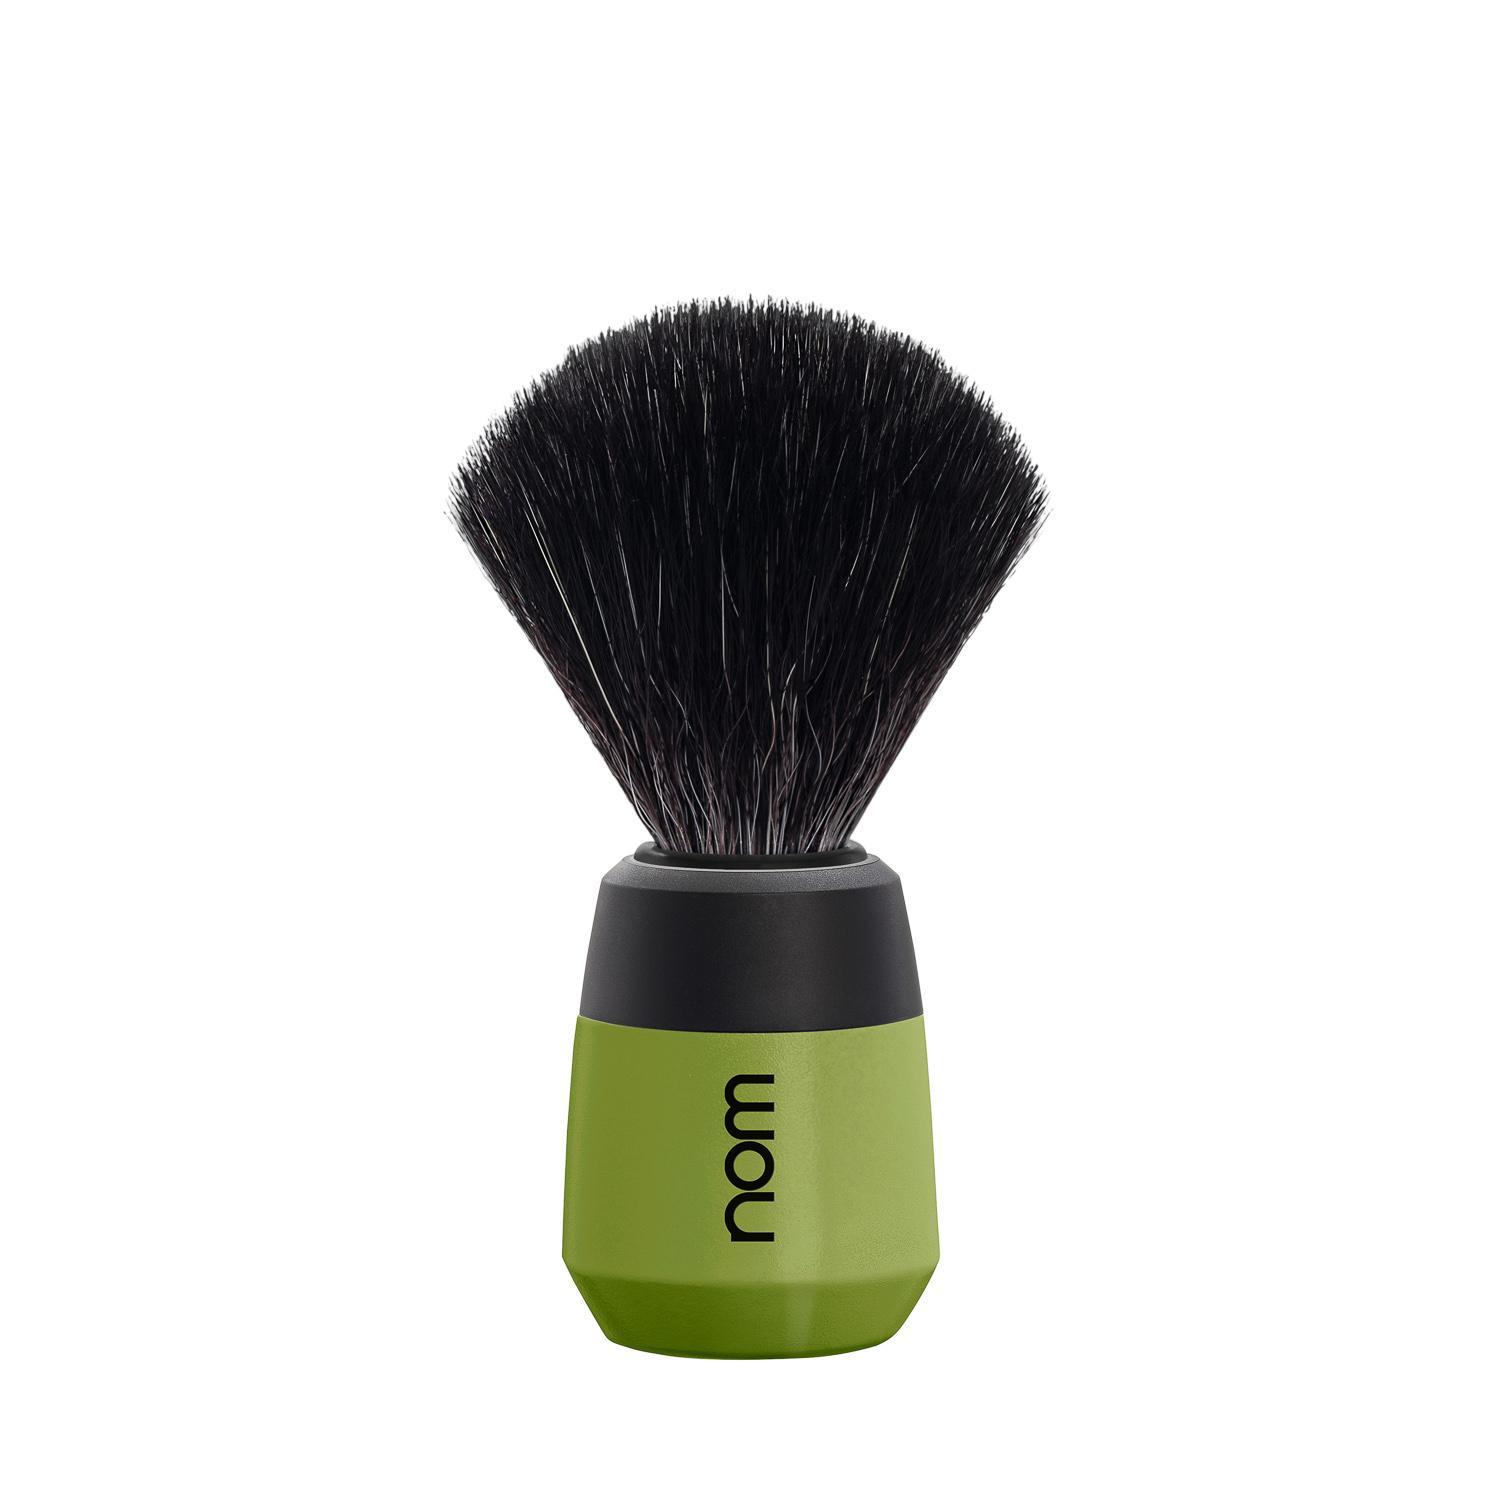 nom MAX Vegan Fibre Shaving Brush in Olive